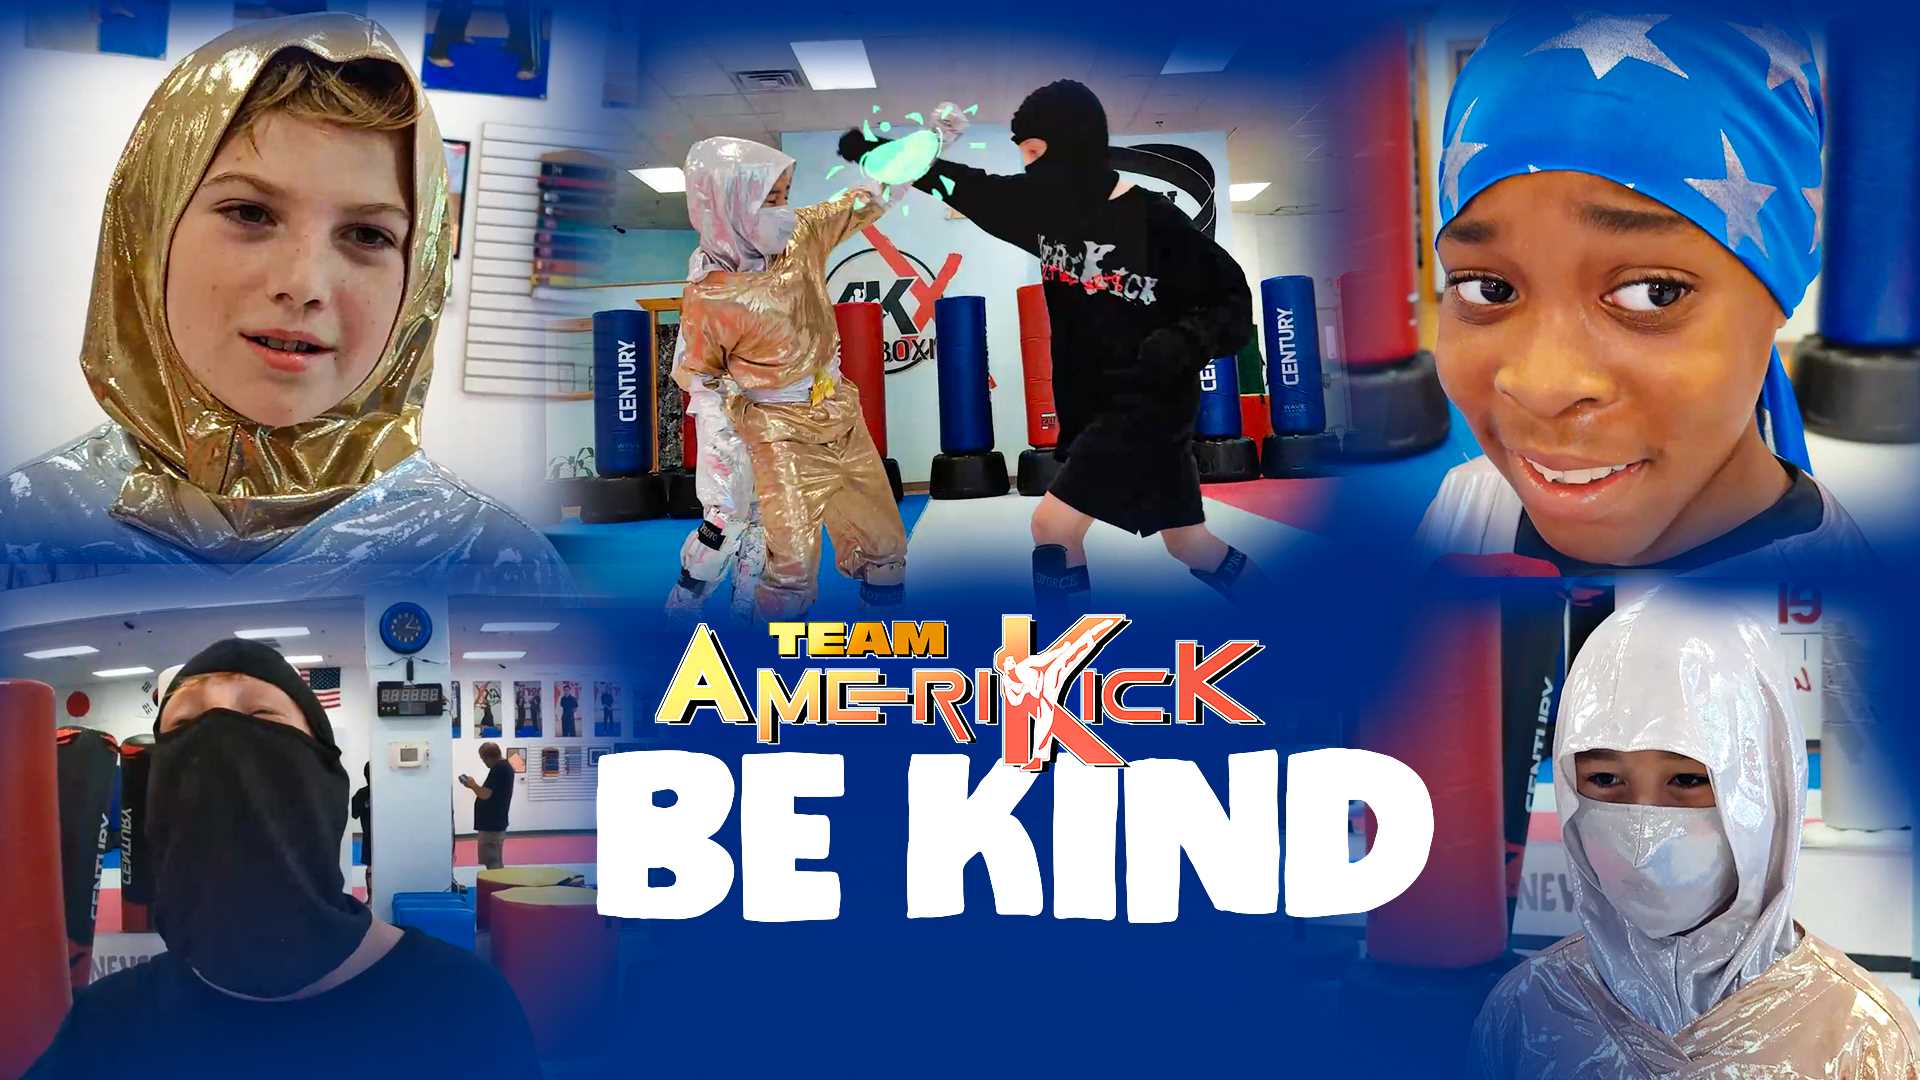 Amerikick Action | Team AmeriKick: BE KIND